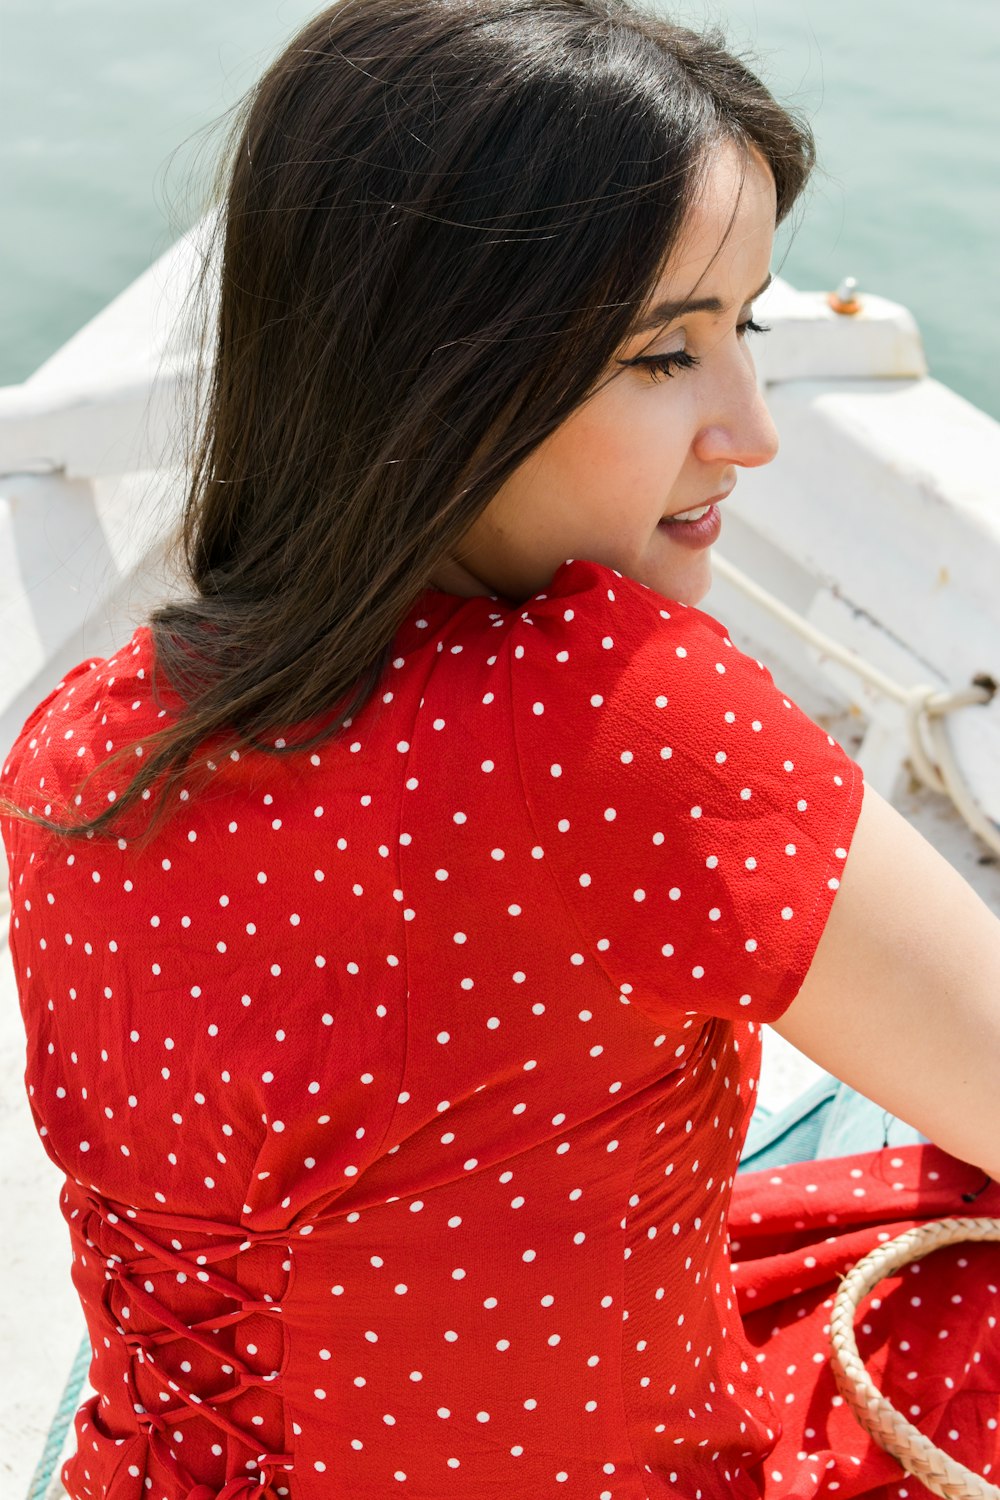 Foto Mujer en camiseta cuello redondo lunares rojos blancos – Cartago gratis en Unsplash